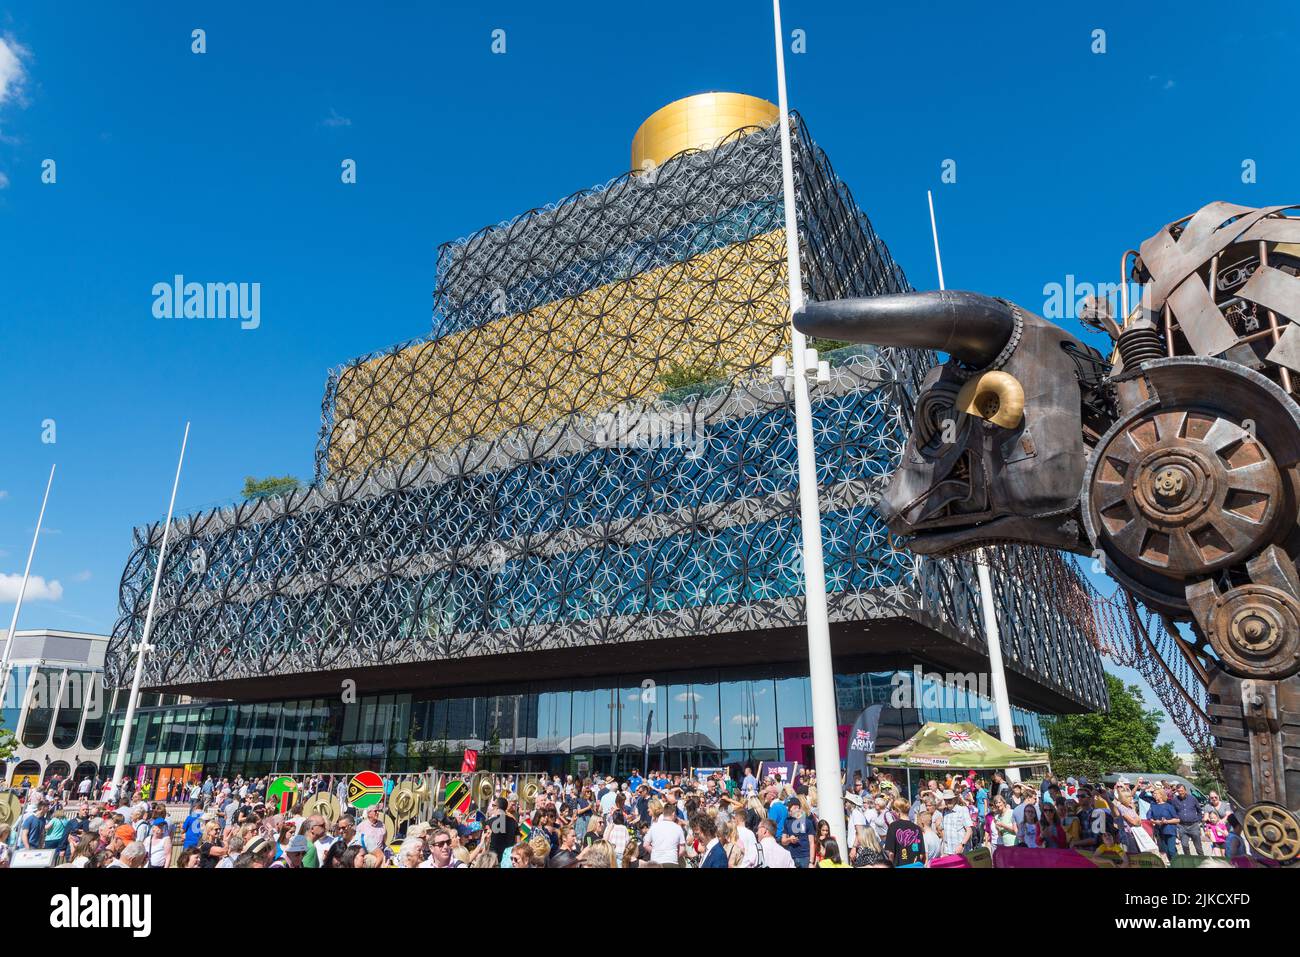 Multitud de visitantes en Birmingham para los Juegos de la Commonwealth de 2022 viendo el Toro que se presentó en la ceremonia de apertura Foto de stock